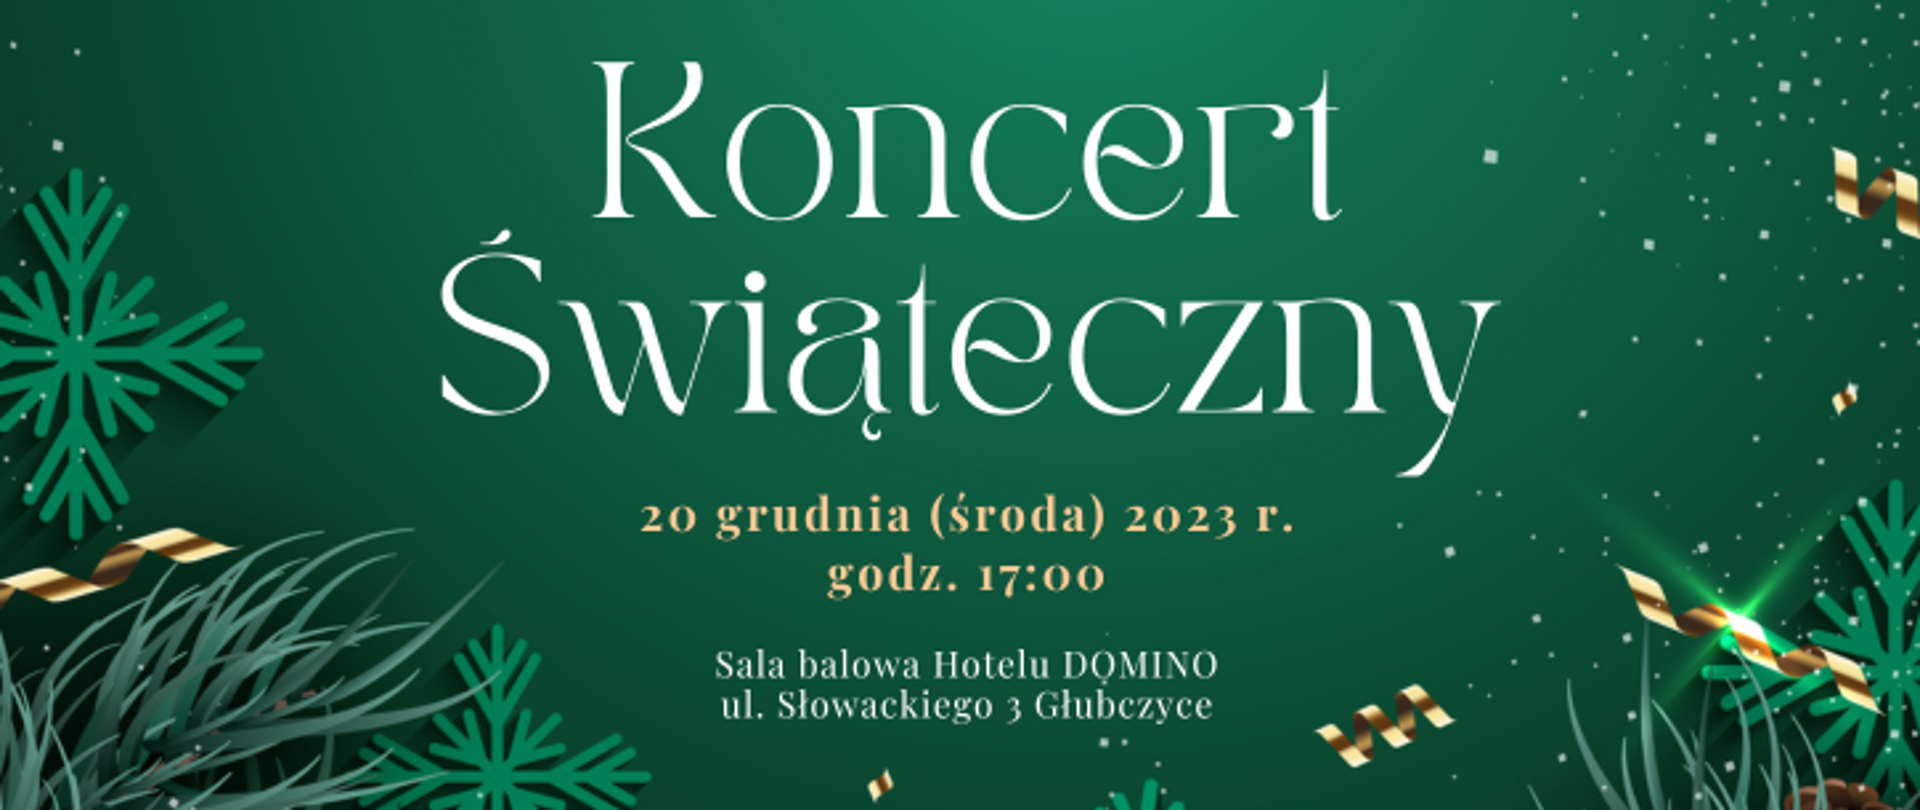 Zielone tło z świątecznymi ozdobami, tekst od góry: Koncert świąteczny, 20 grudnia (środa) 2023 r, godz. 17:00 Sala Balowa Hotelu DOMINO, ul. Słowackiego 3 Głubczyce